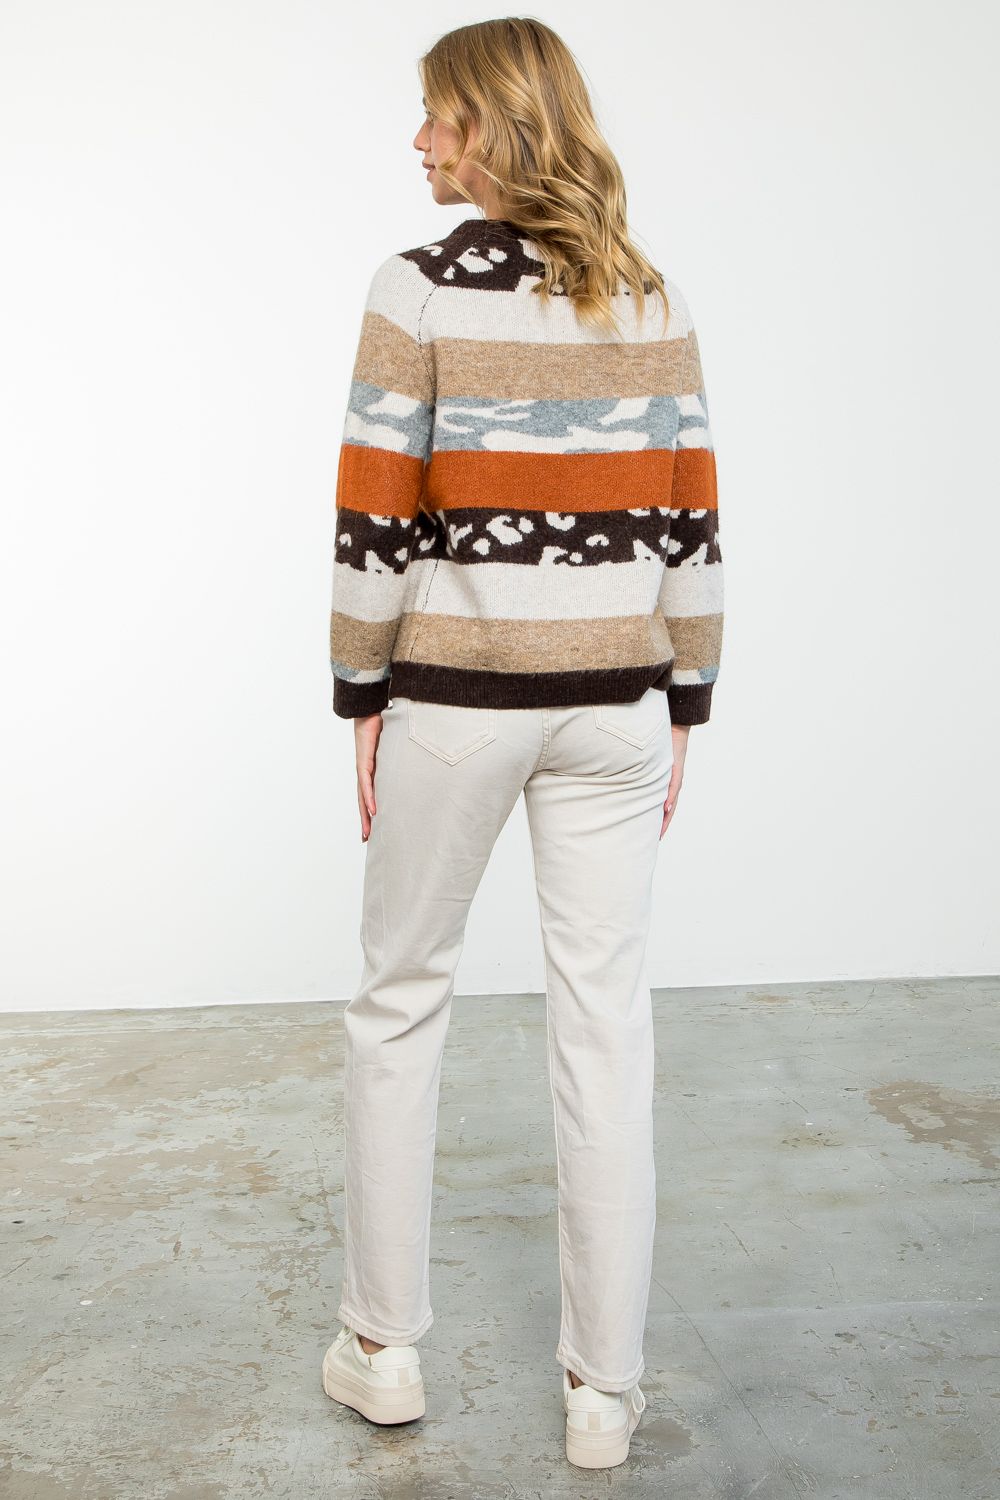 Rachel Striped Sweater